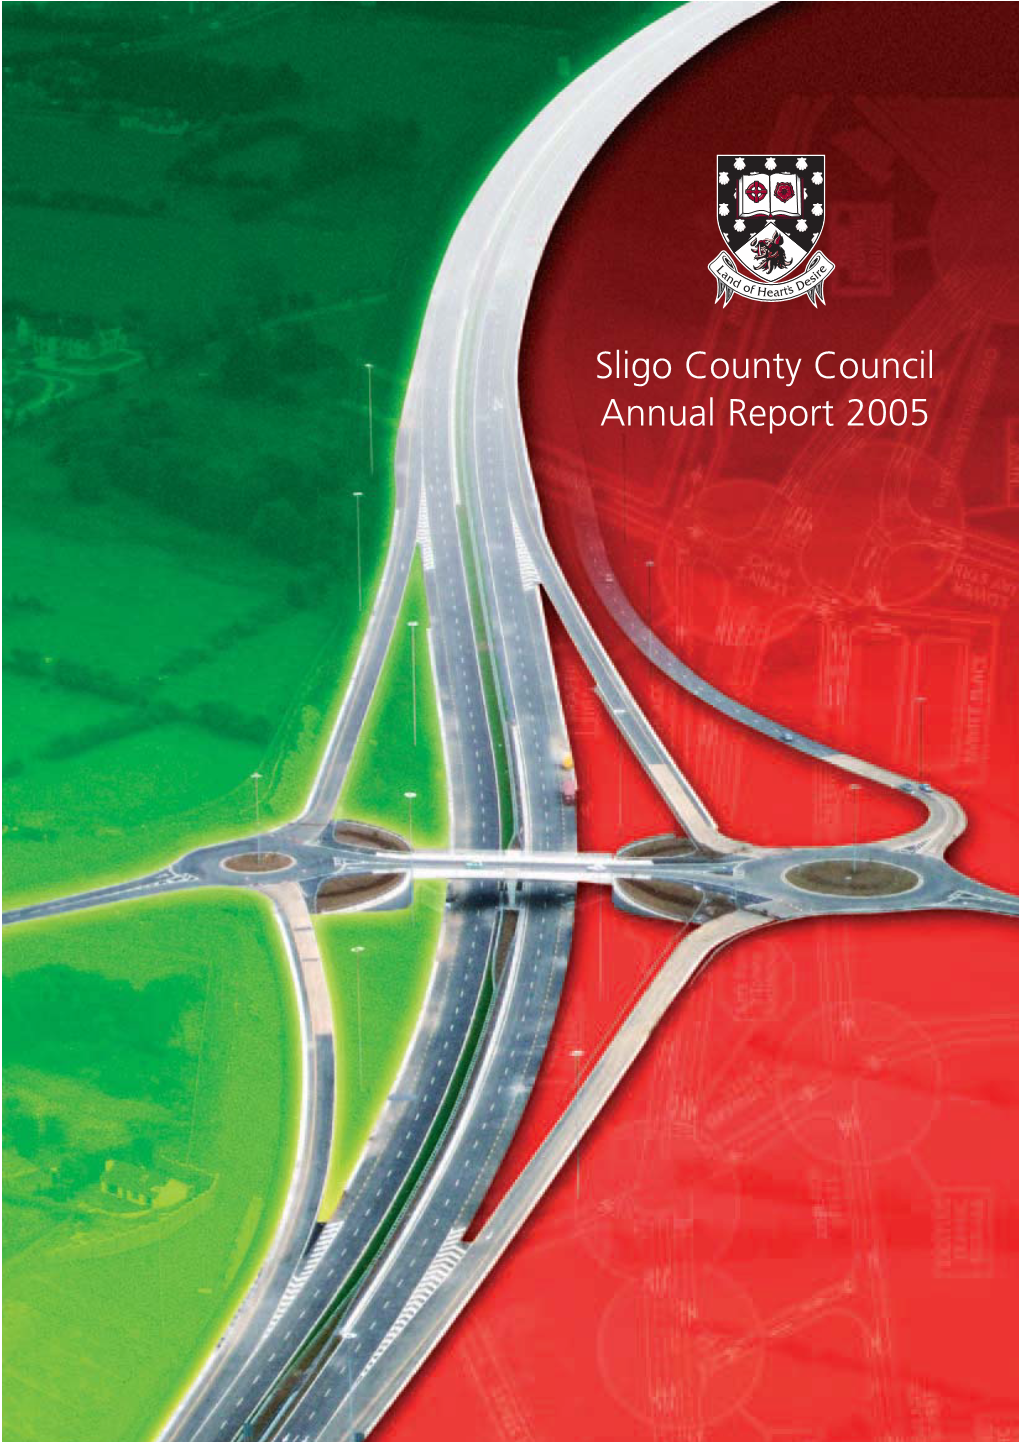 Sligo County Council Annual Report 2005 Sligo County Council Annual Report 2005